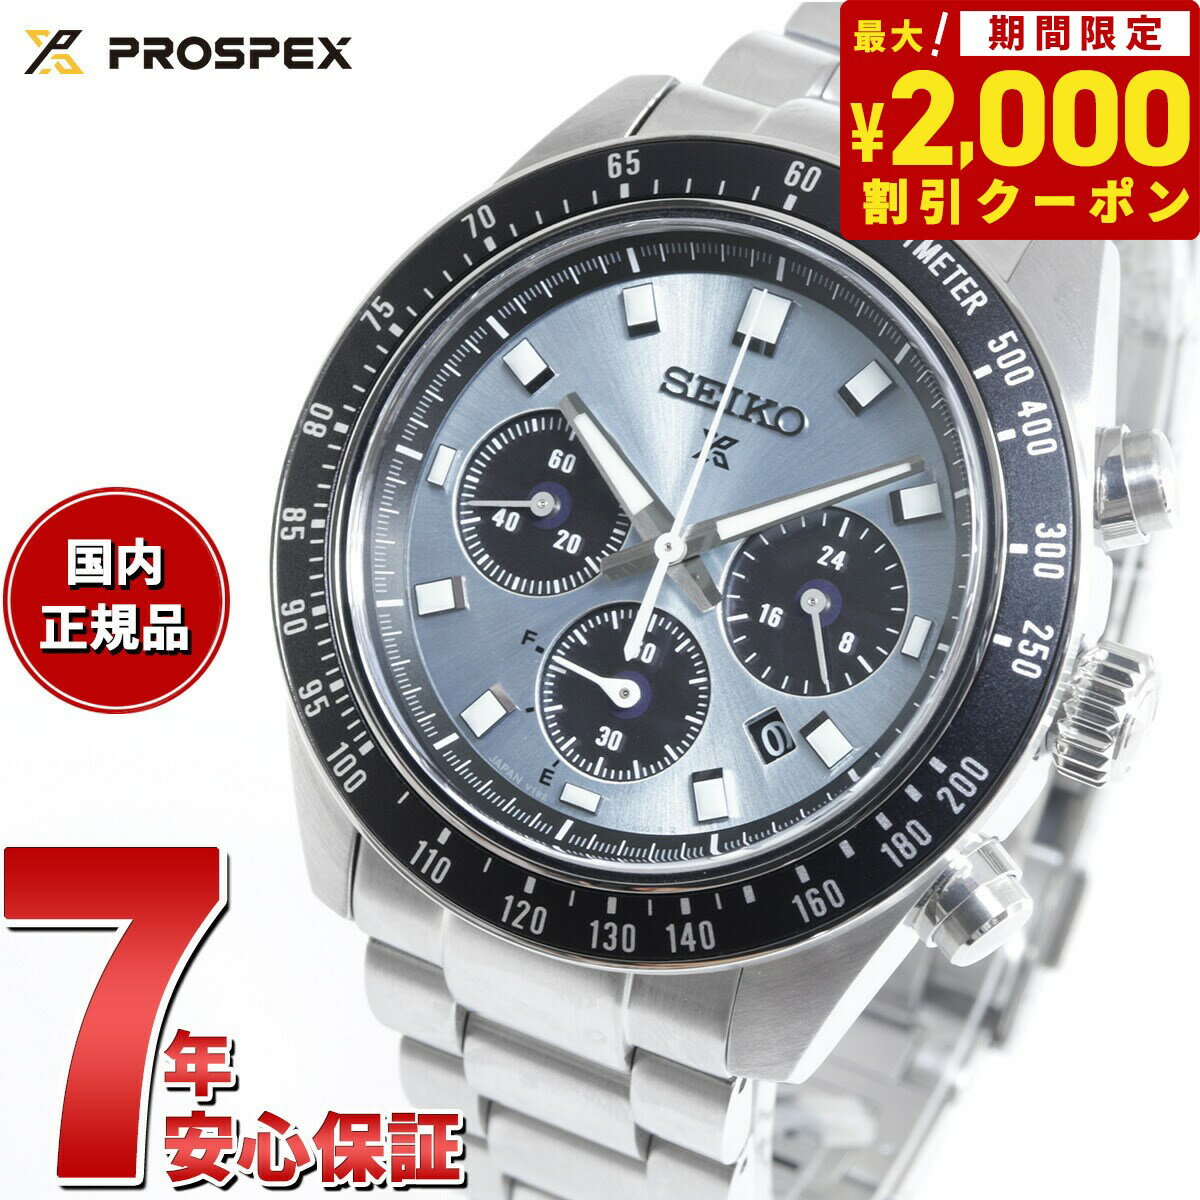 セイコー プロスペックス SBDL109 スピードタイマー ソーラークロノグラフ 腕時計 メンズ SEIKO PROSPEX SPEEDTIMER クリスタルトロフィー 日本製